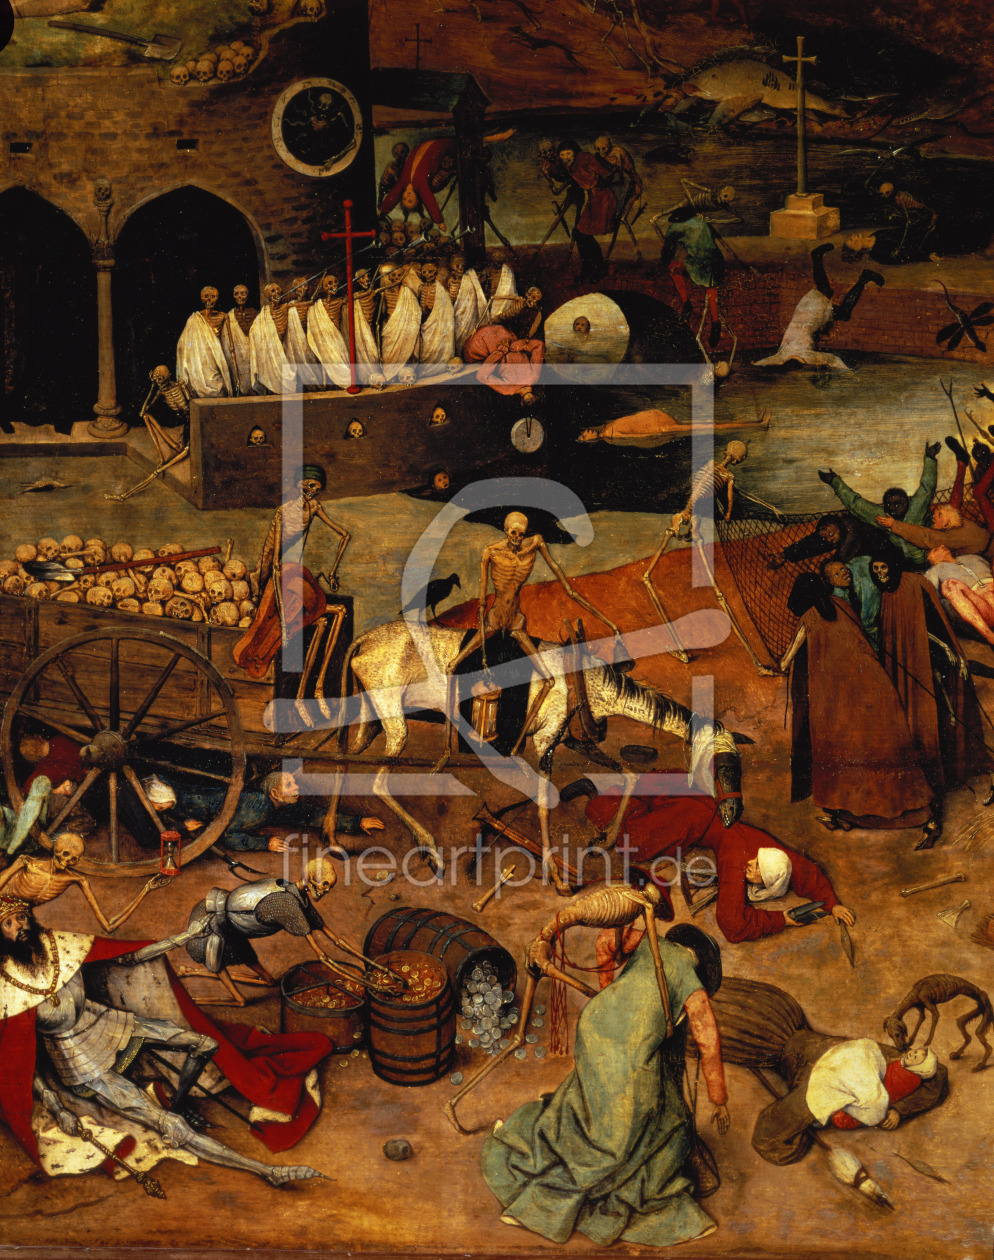 Bild-Nr.: 31002828 The Triumph of Death, c.1562 erstellt von Bruegel, Pieter the Elder